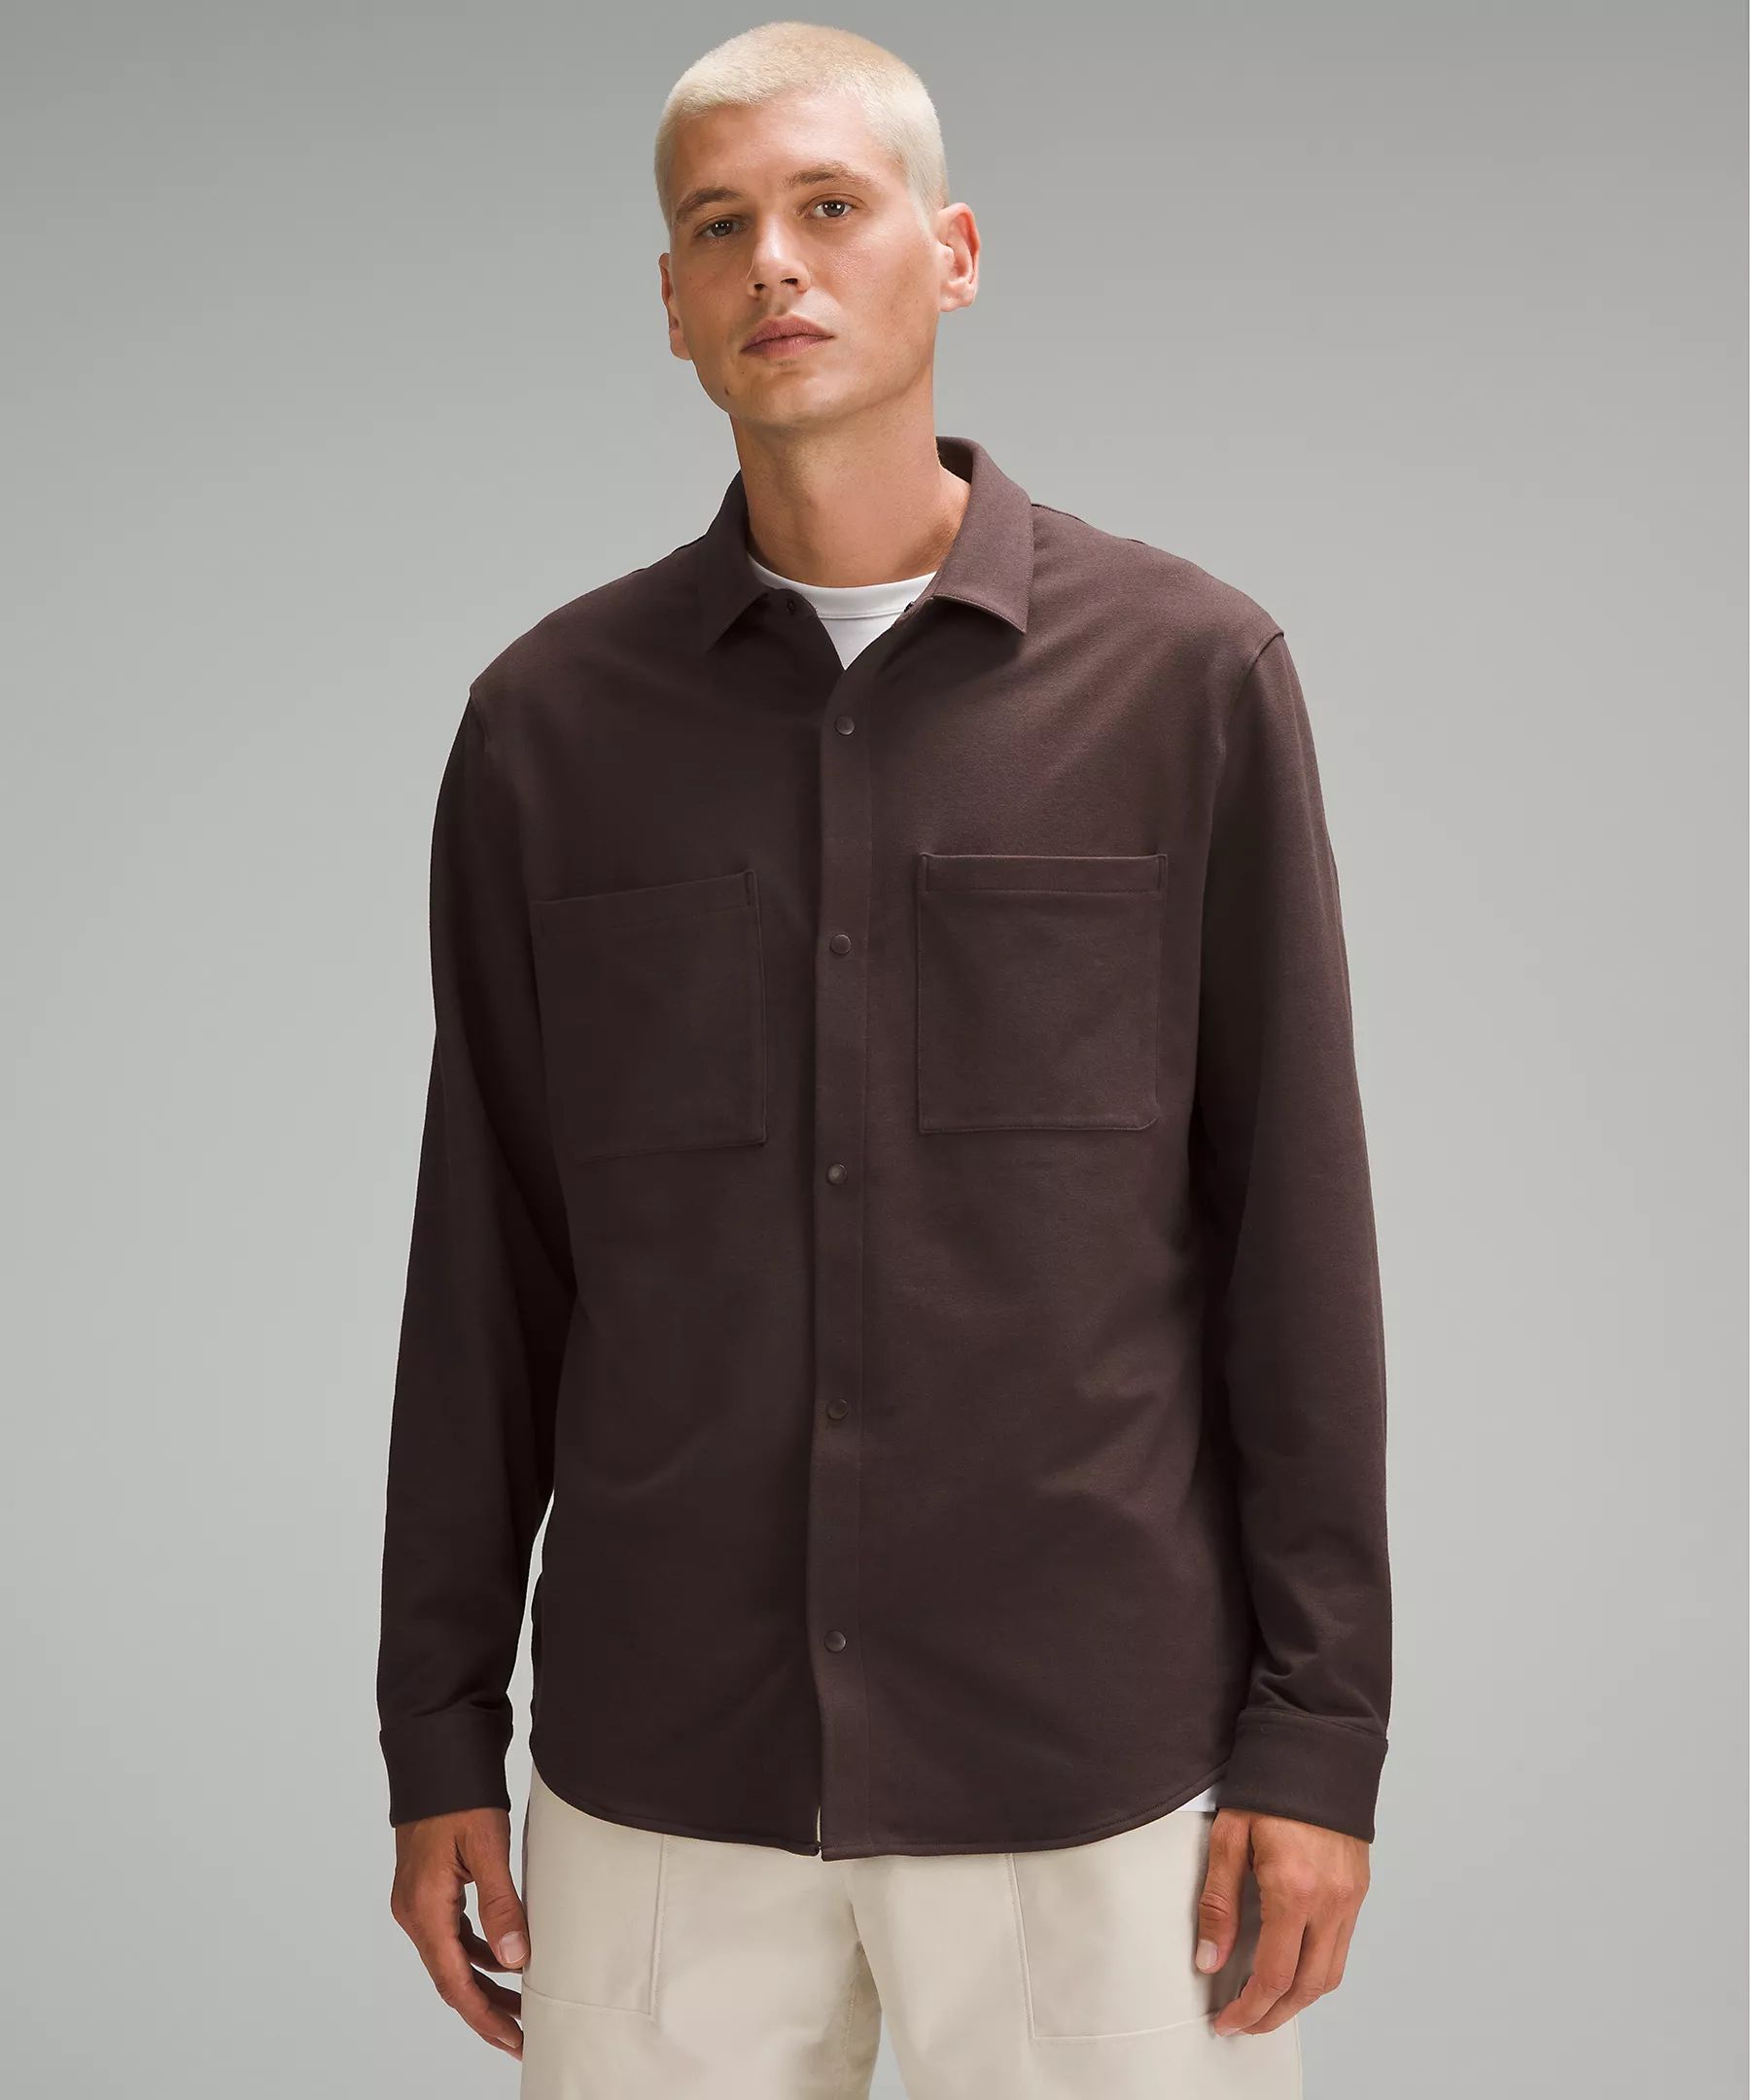 Soft Knit Overshirt *French Terry | Men's Long Sleeve Shirts | lululemon | Lululemon (US)